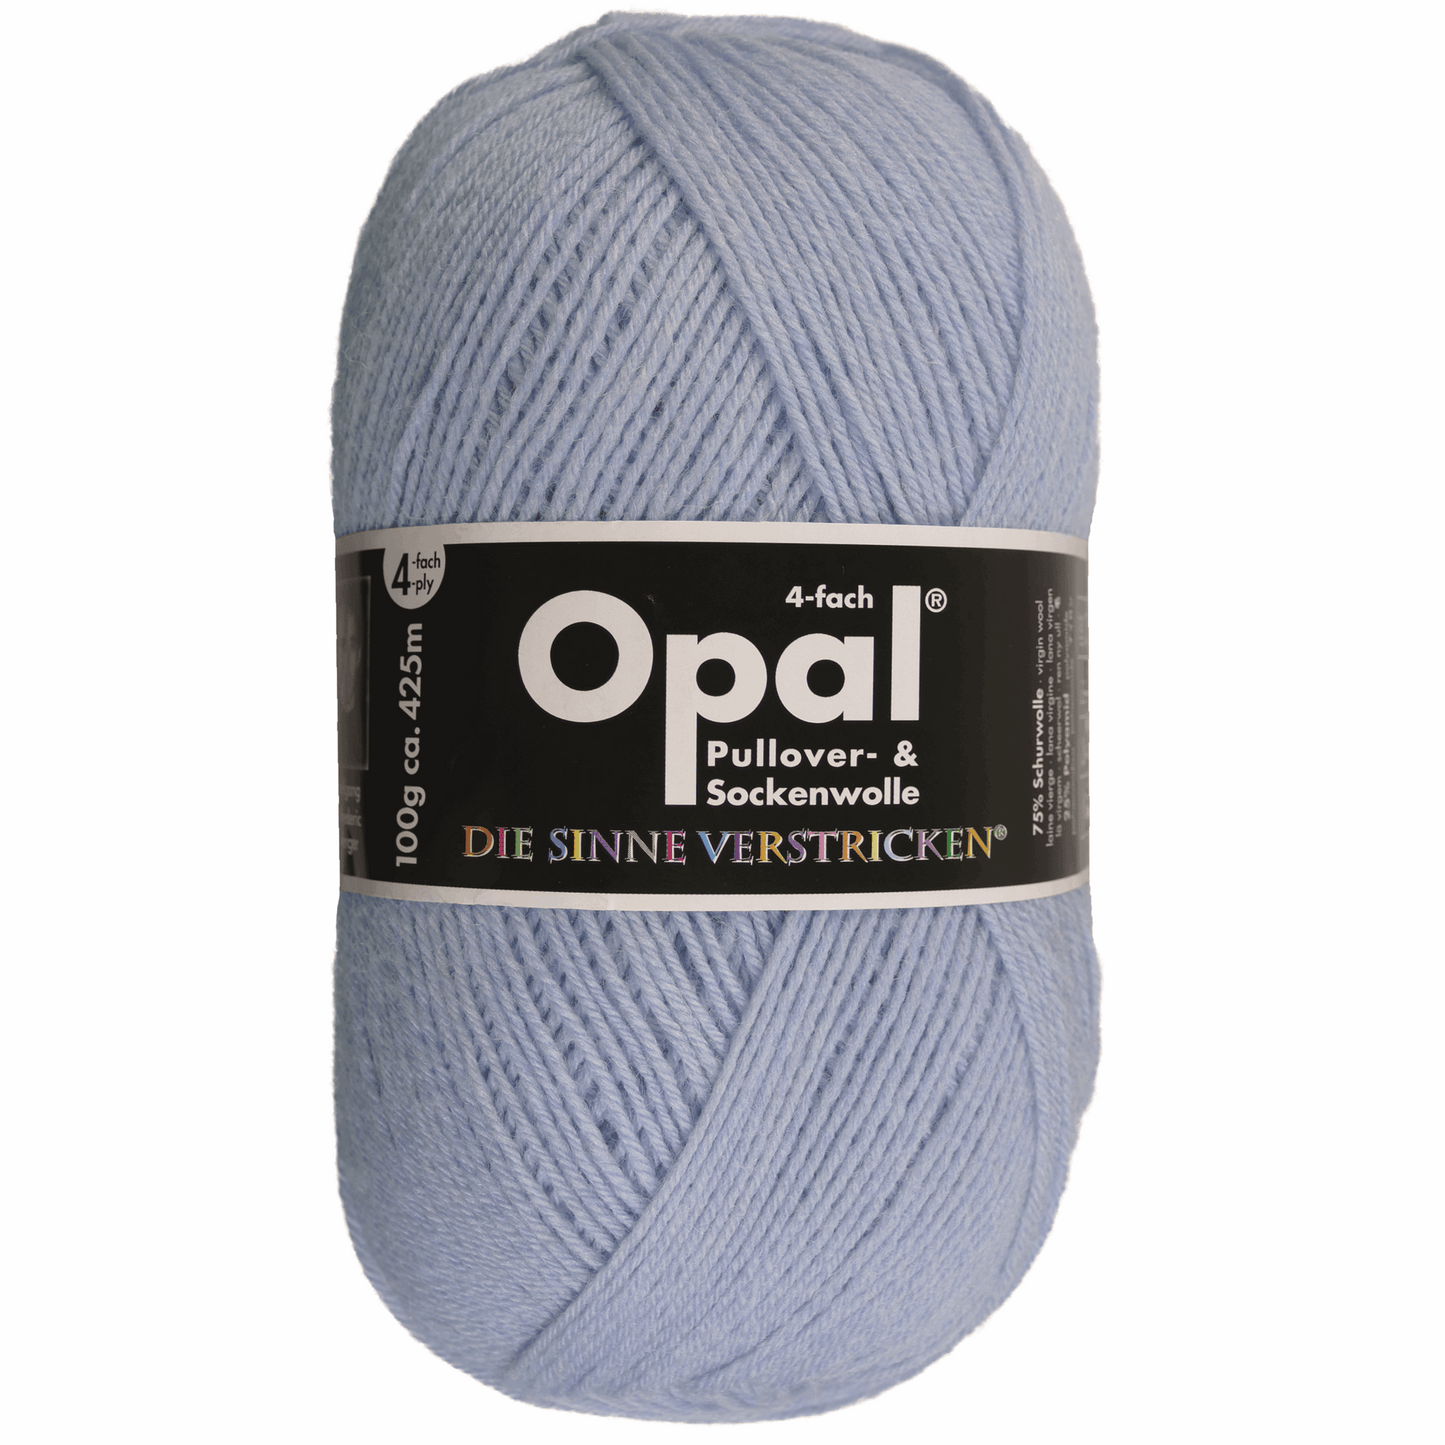 Opal plain 4 threads. 100g 2011/12, 97760, color sky blue 9932